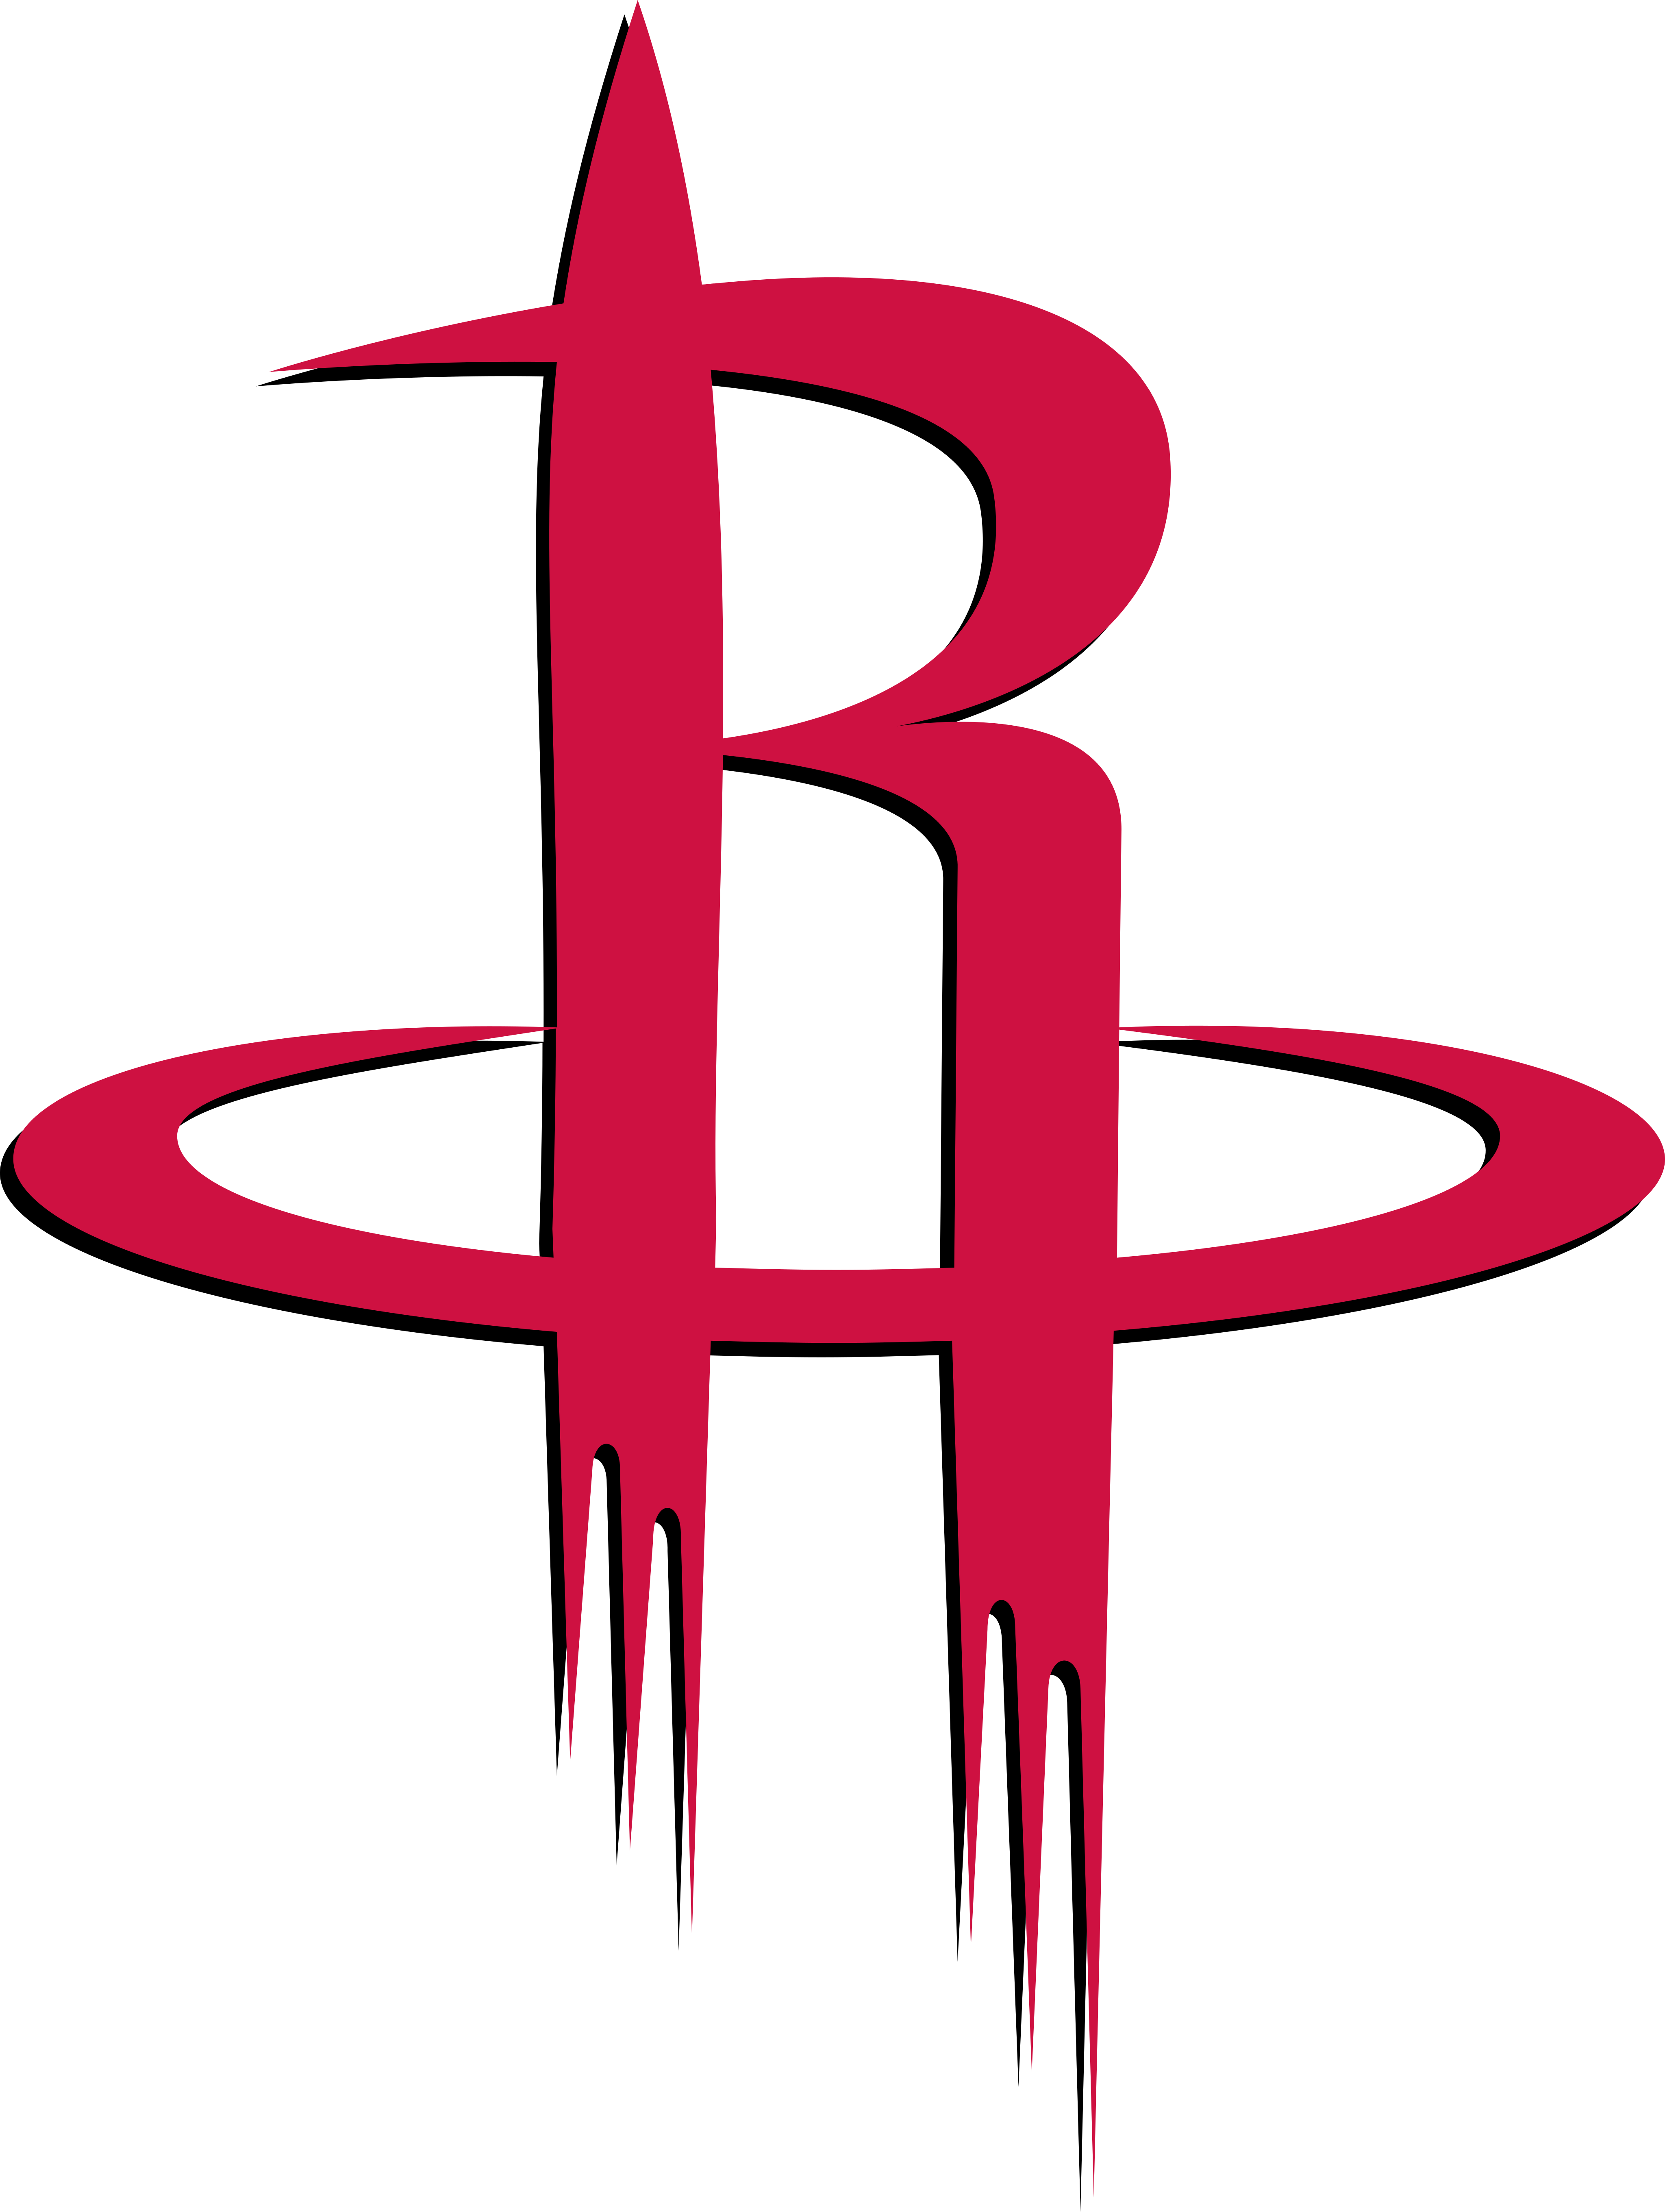 houston rockets logo 1 - Houston Rockets Logo